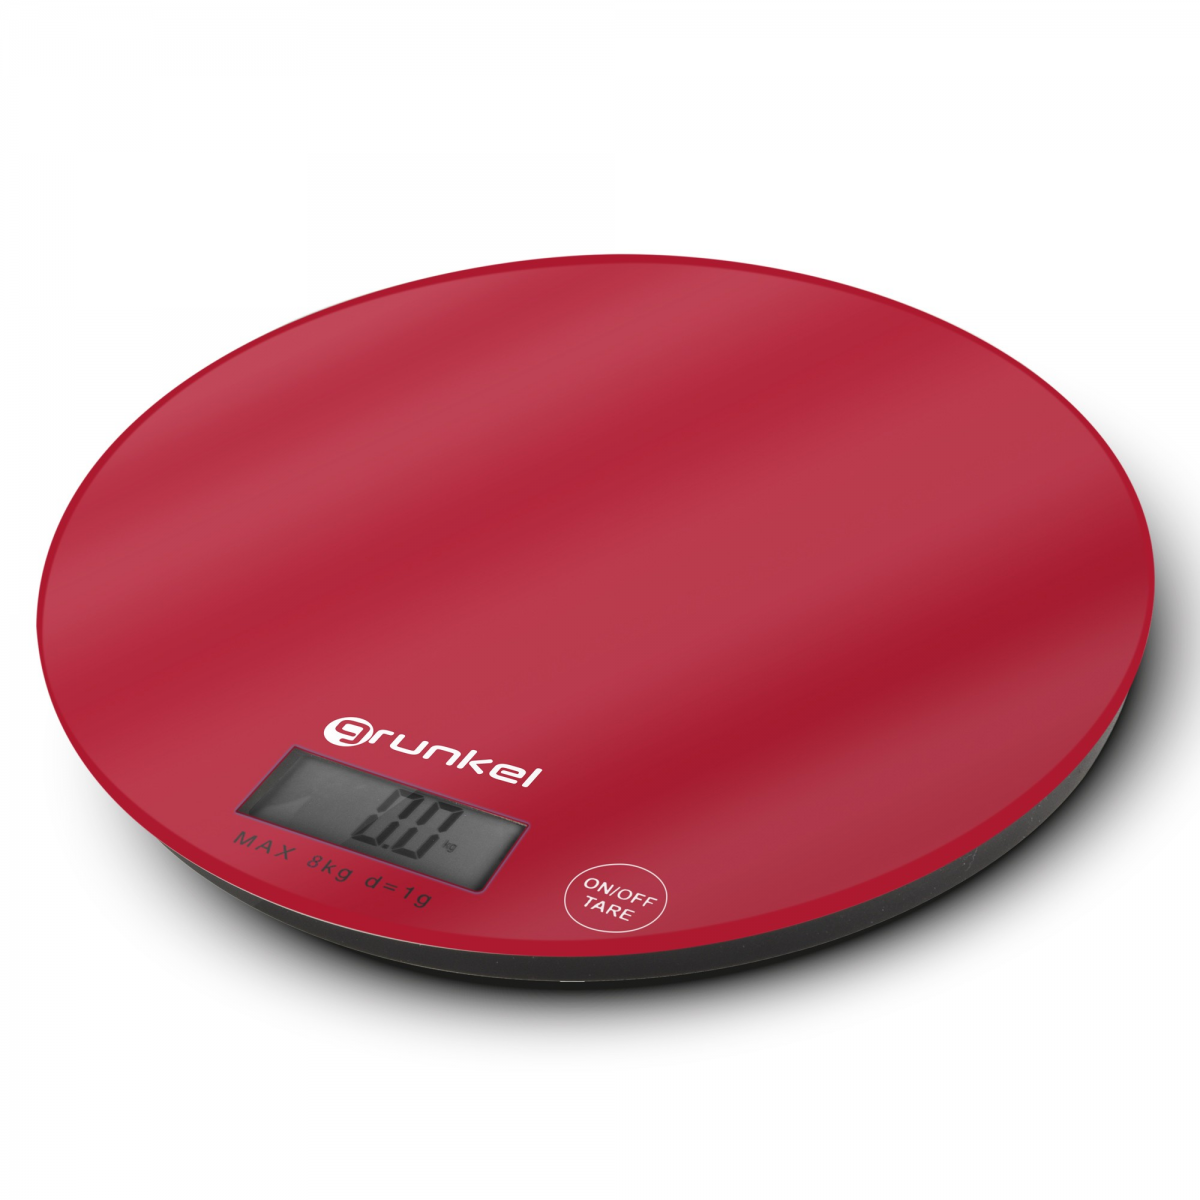 Báscula digital de cocina con pesas para alimentos, color rojo, báscula  electrónica de cocina para el hogar, cocina, HUYP